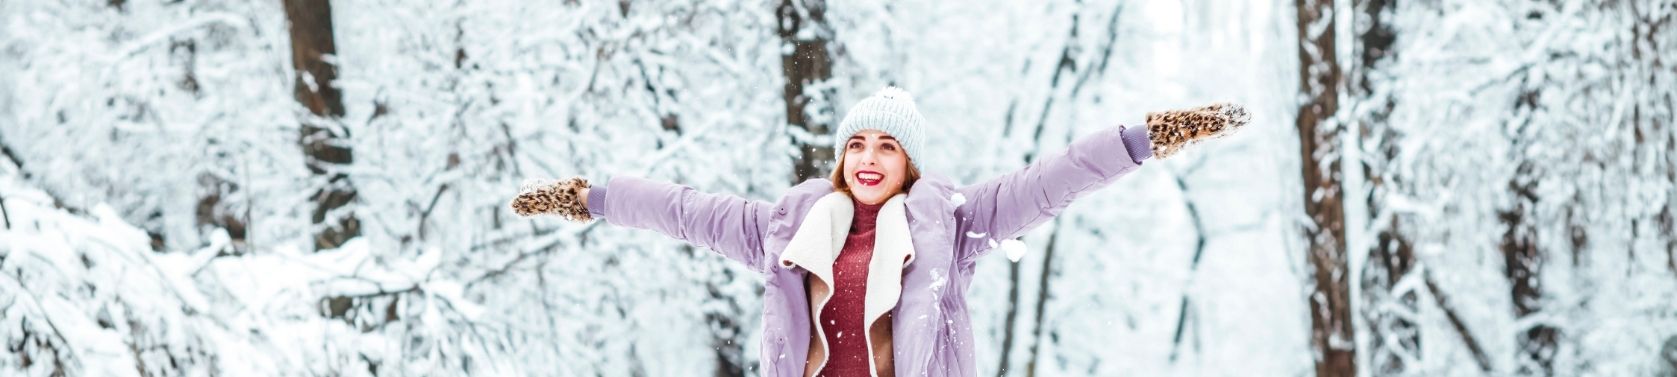 6 Gründe, warum du dich schon jetzt auf den Winter freuen kannst